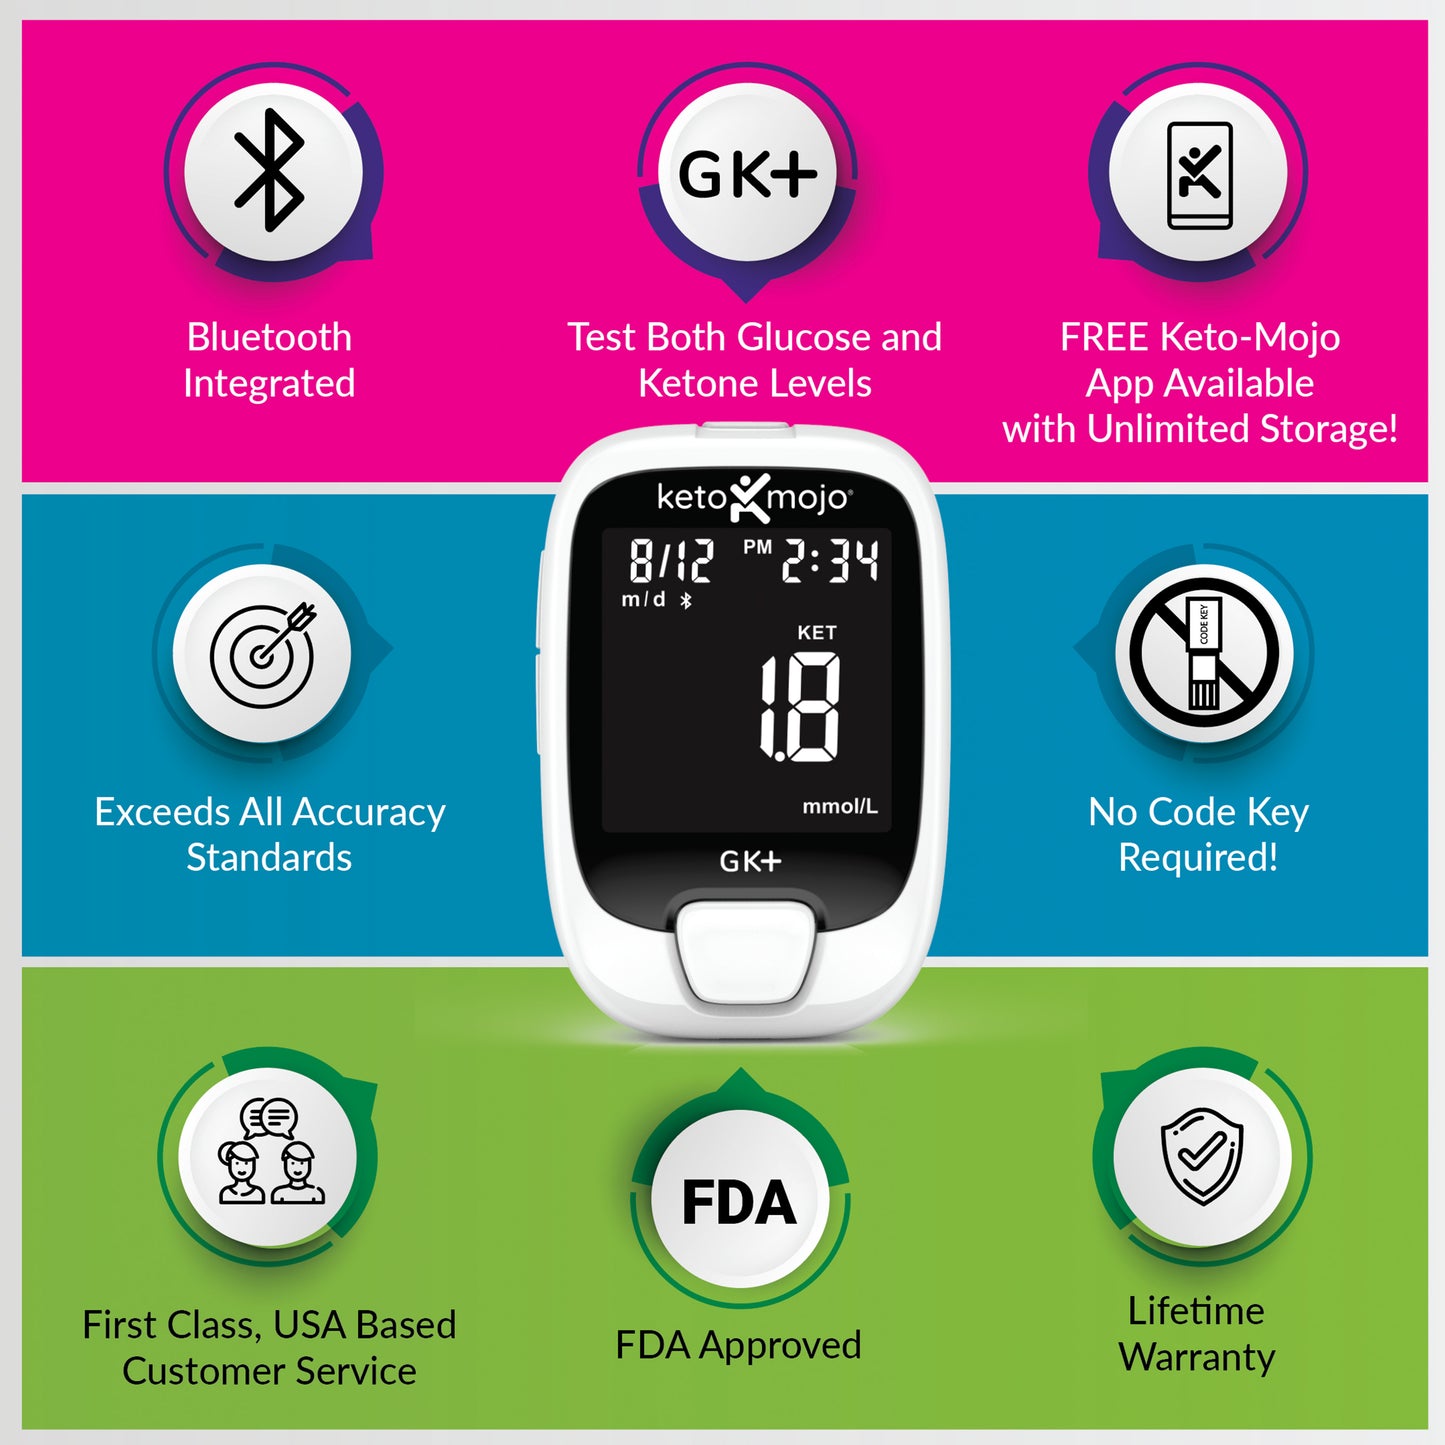 Keto-Mojo GK+ Набор базовых измерителей глюкозы и кетонов в крови - Официальный сайт компании